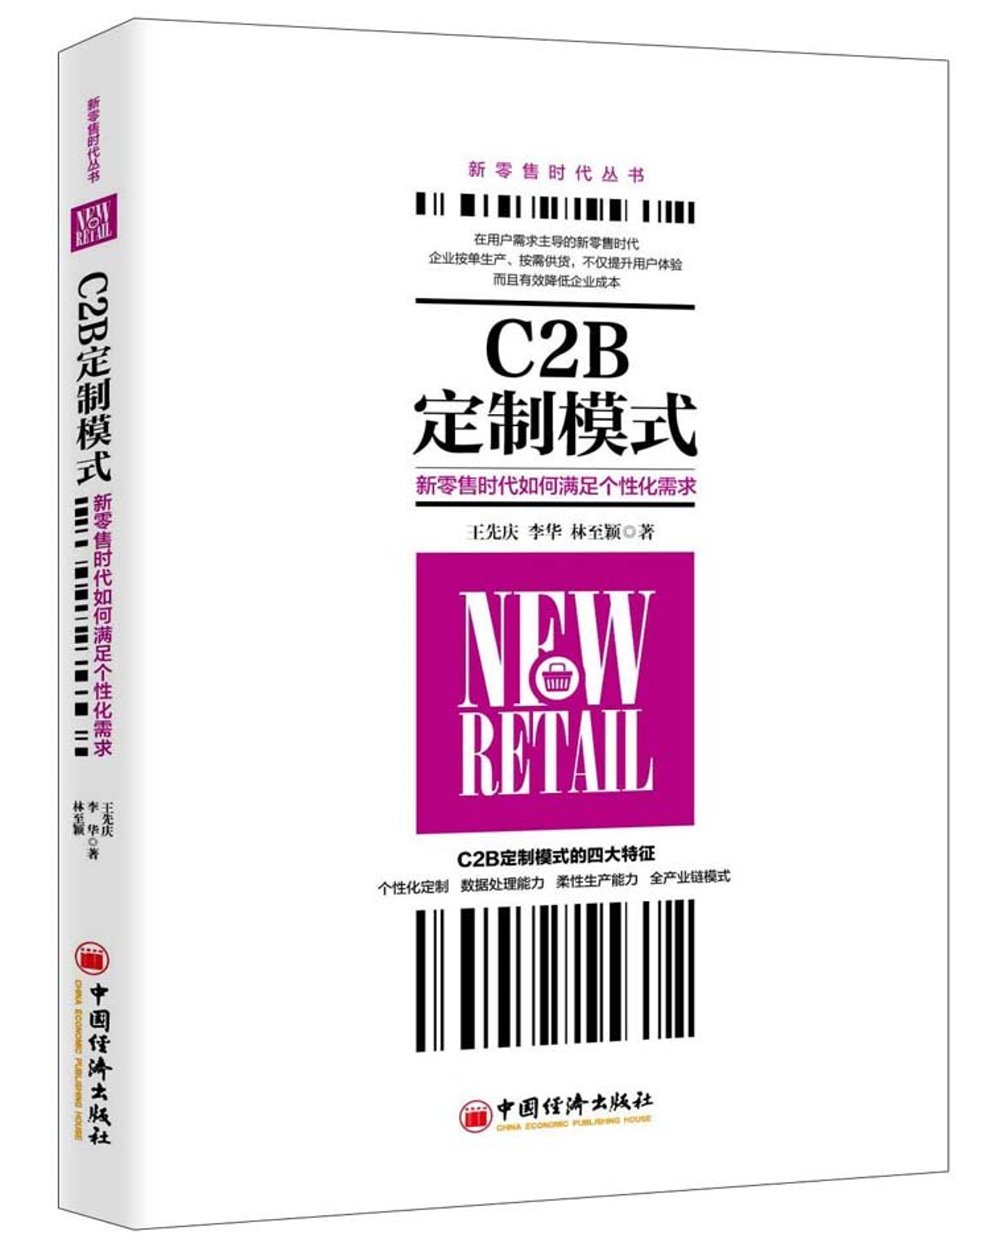 C2B定制模式：新零售時代如何滿足個性化需求